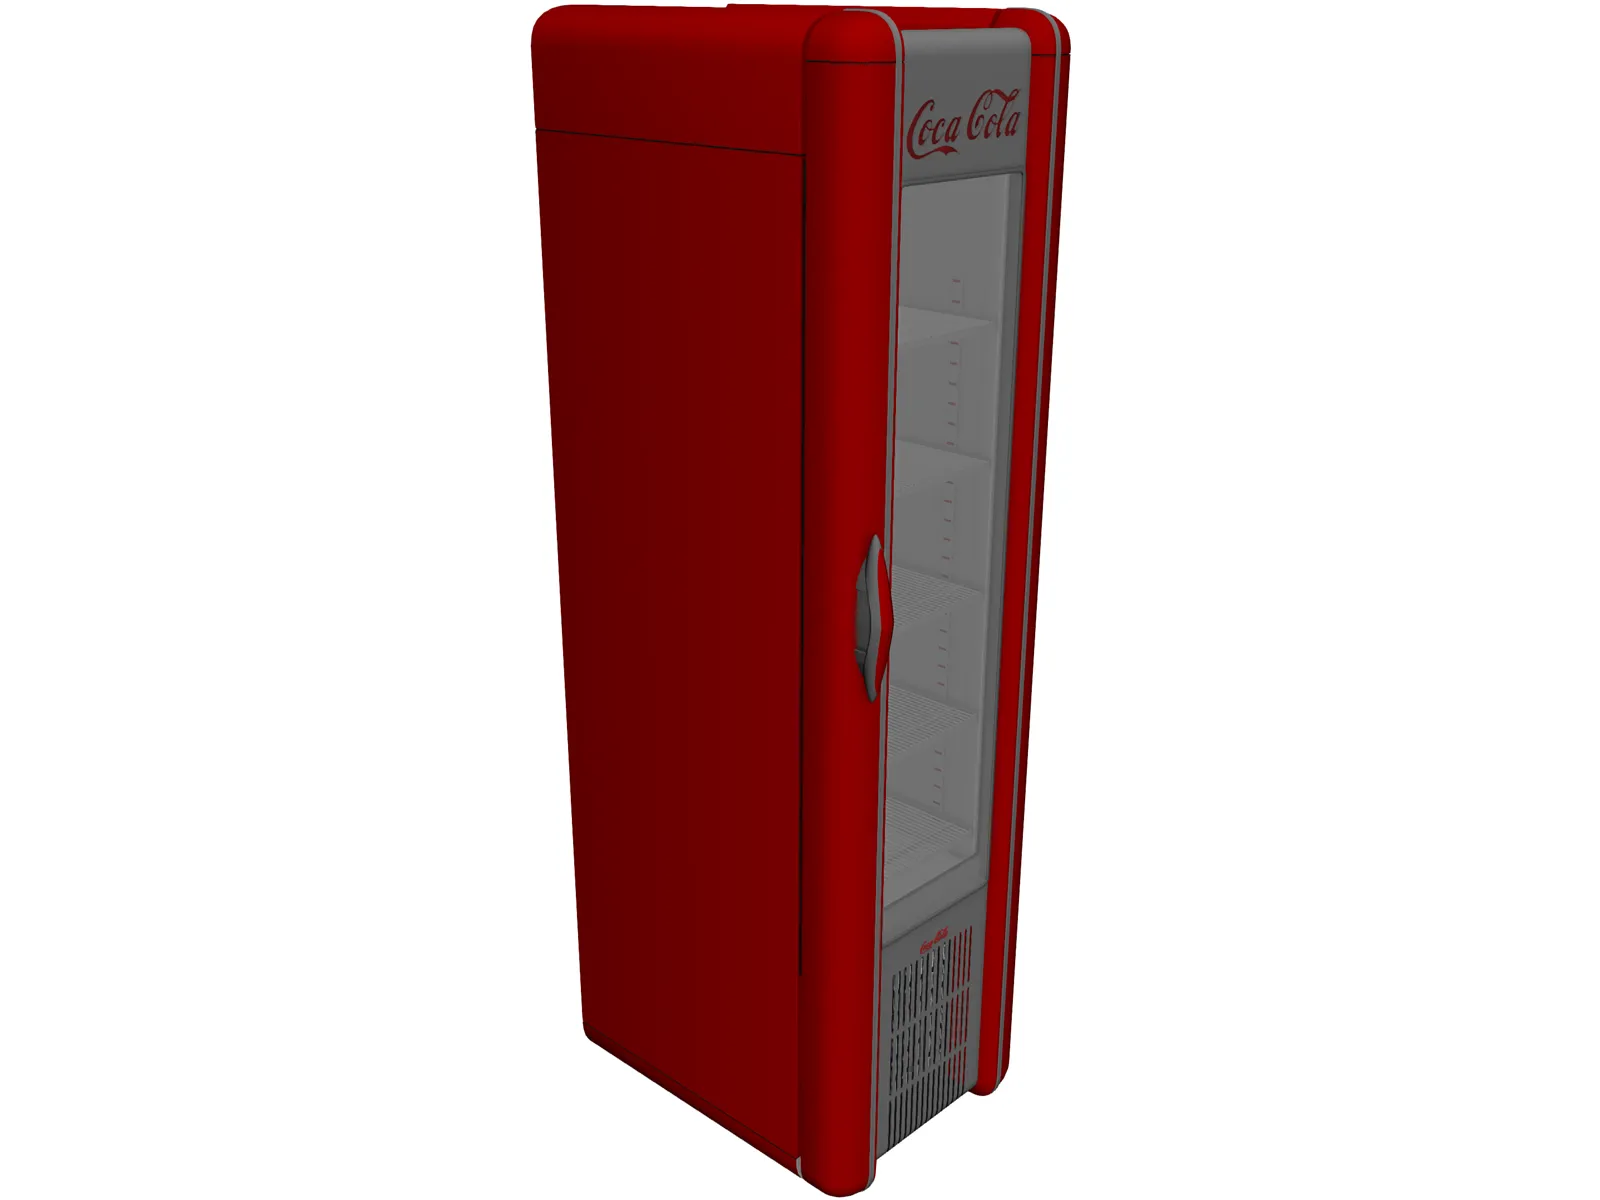 3dsmax coca-cola refrigerator